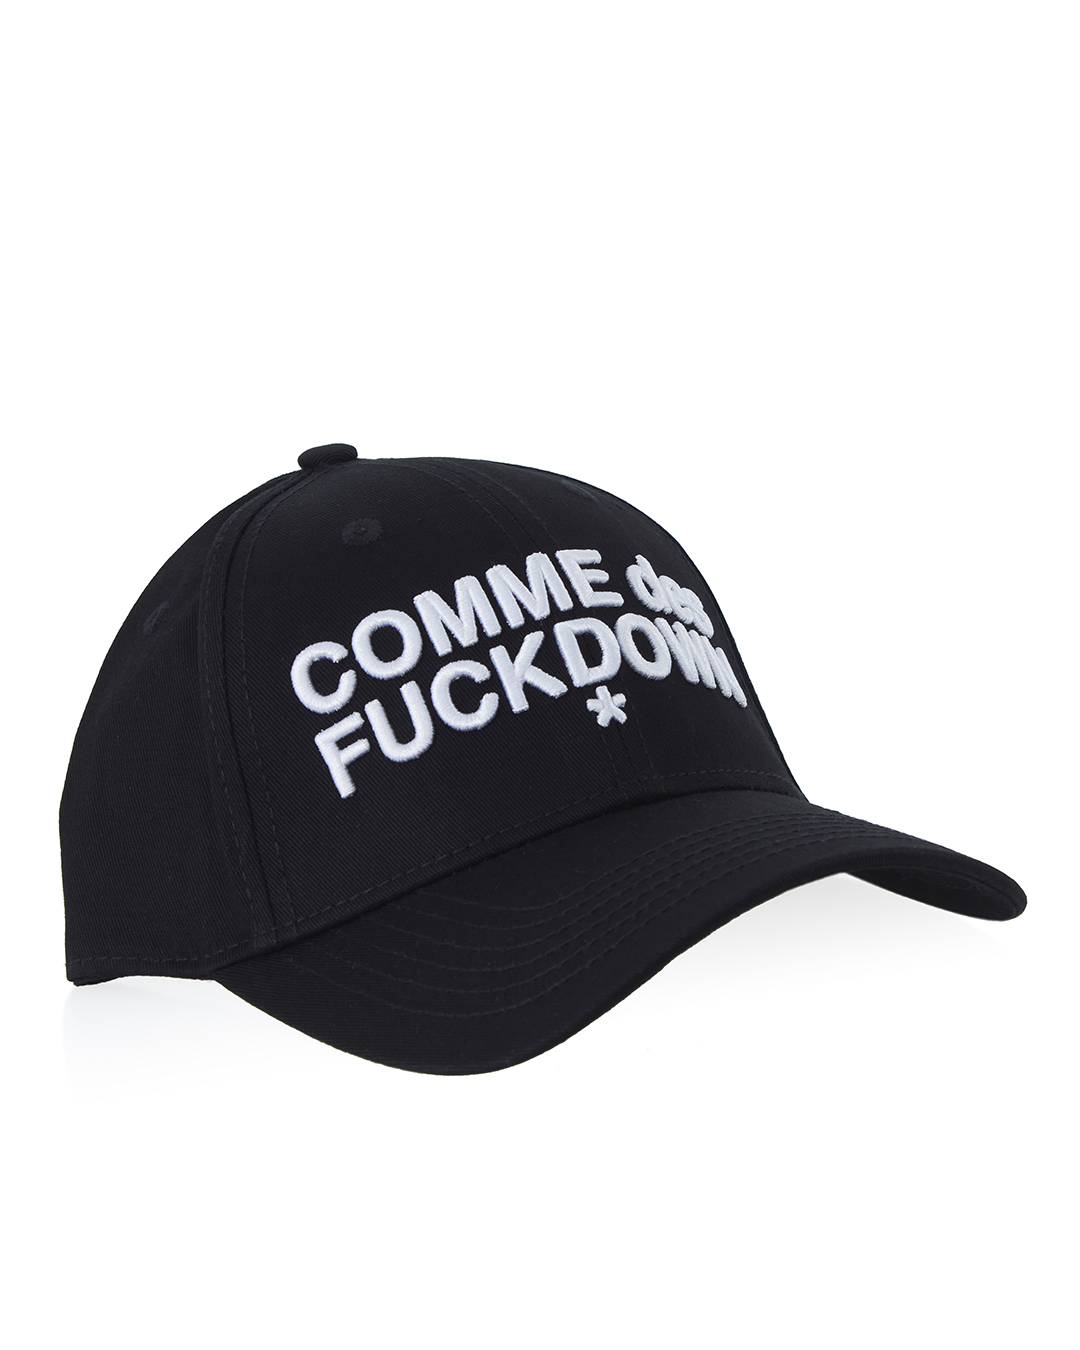 COMME des FUCKDOWN с объемной вышивкой  артикул  марки COMME des FUCKDOWN купить за 7500 руб.